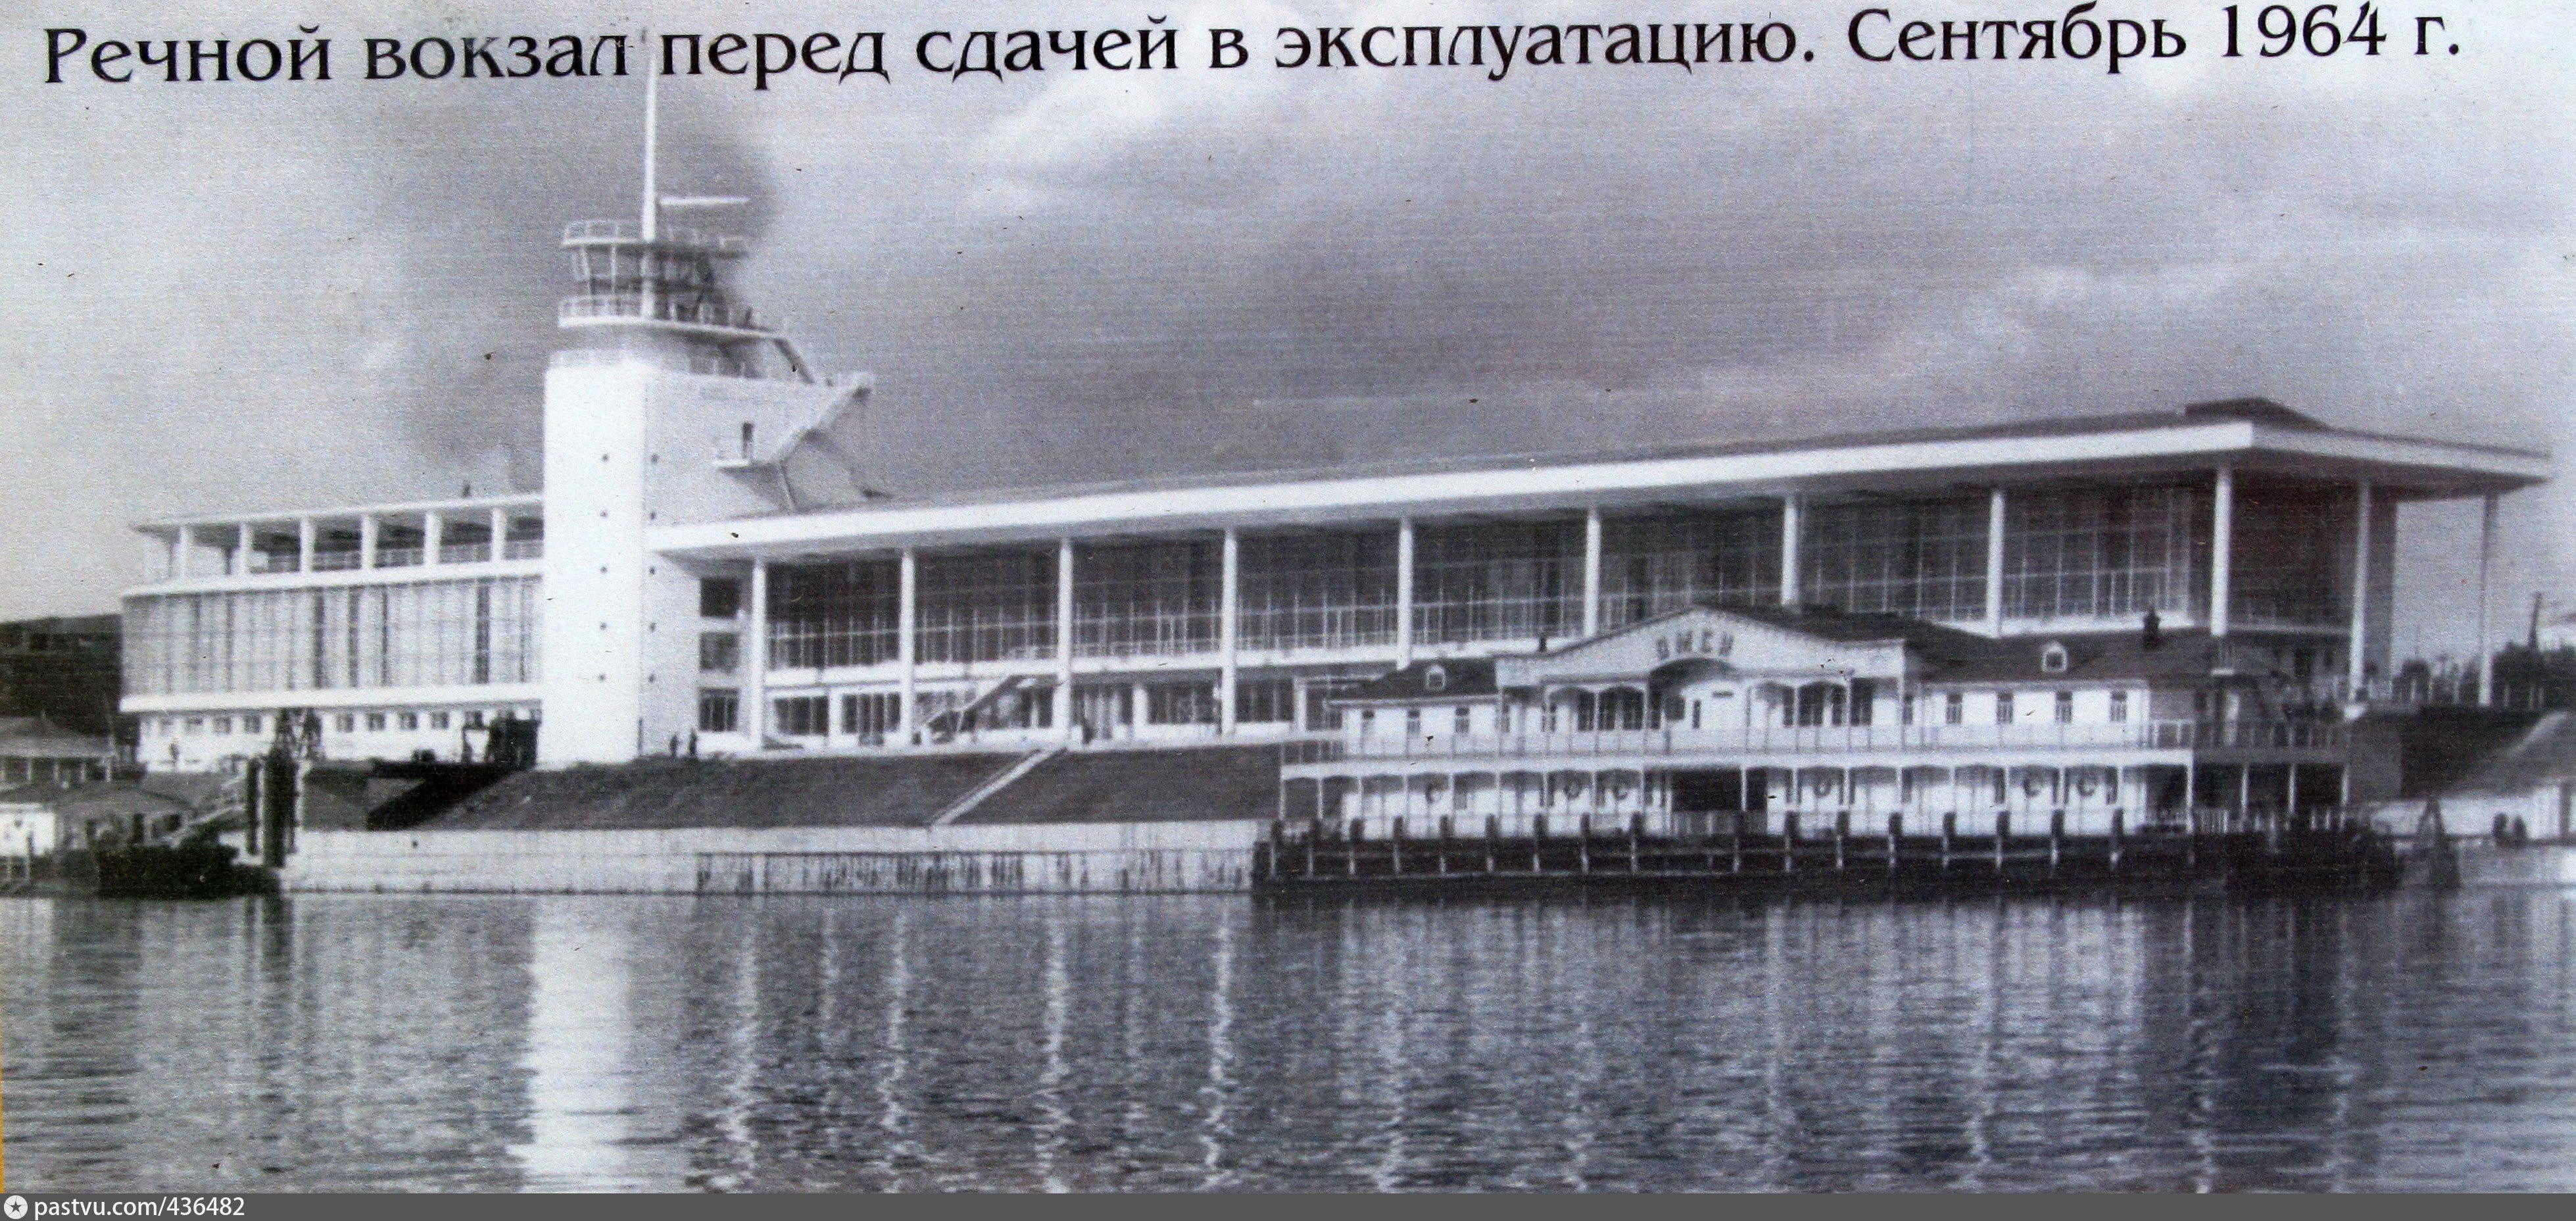 речной вокзал омск старые